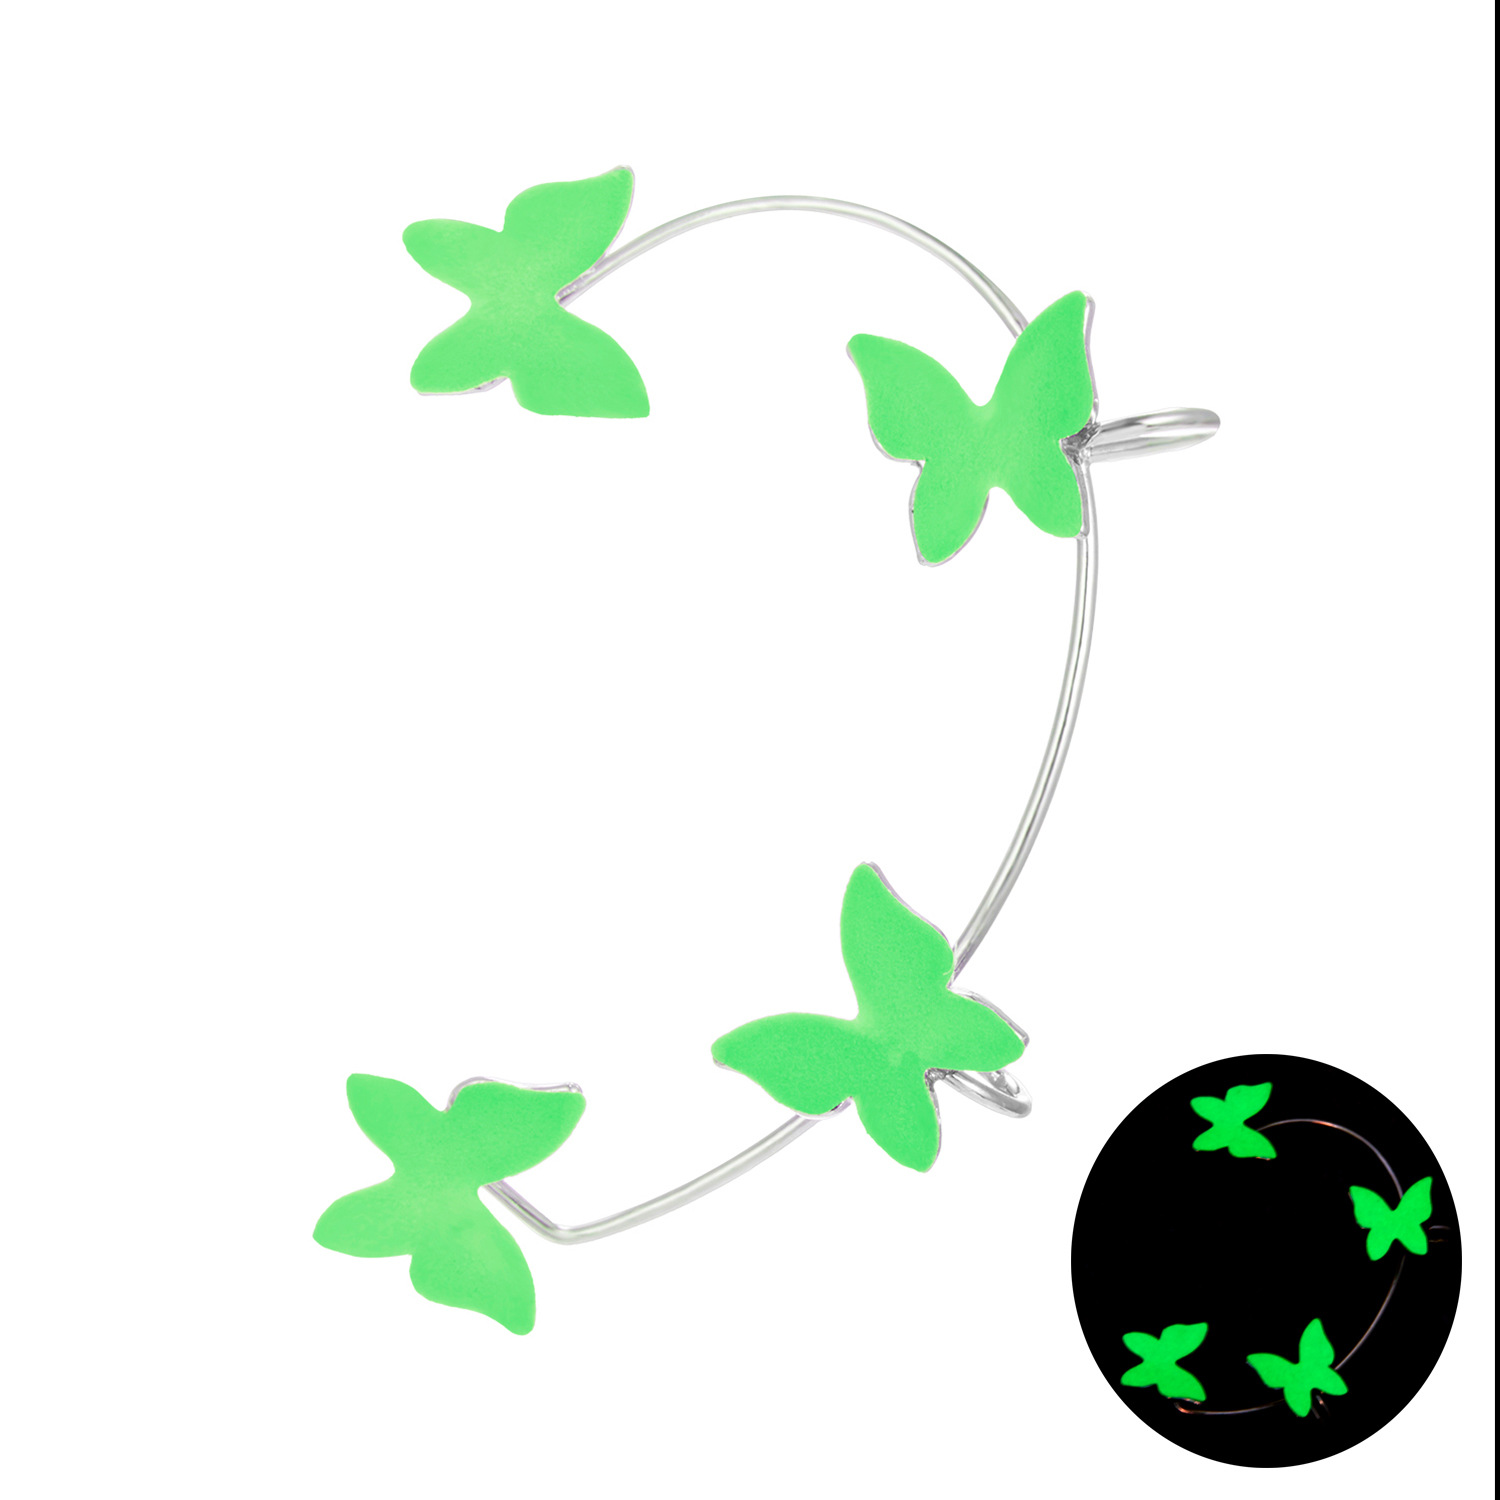 3:green left